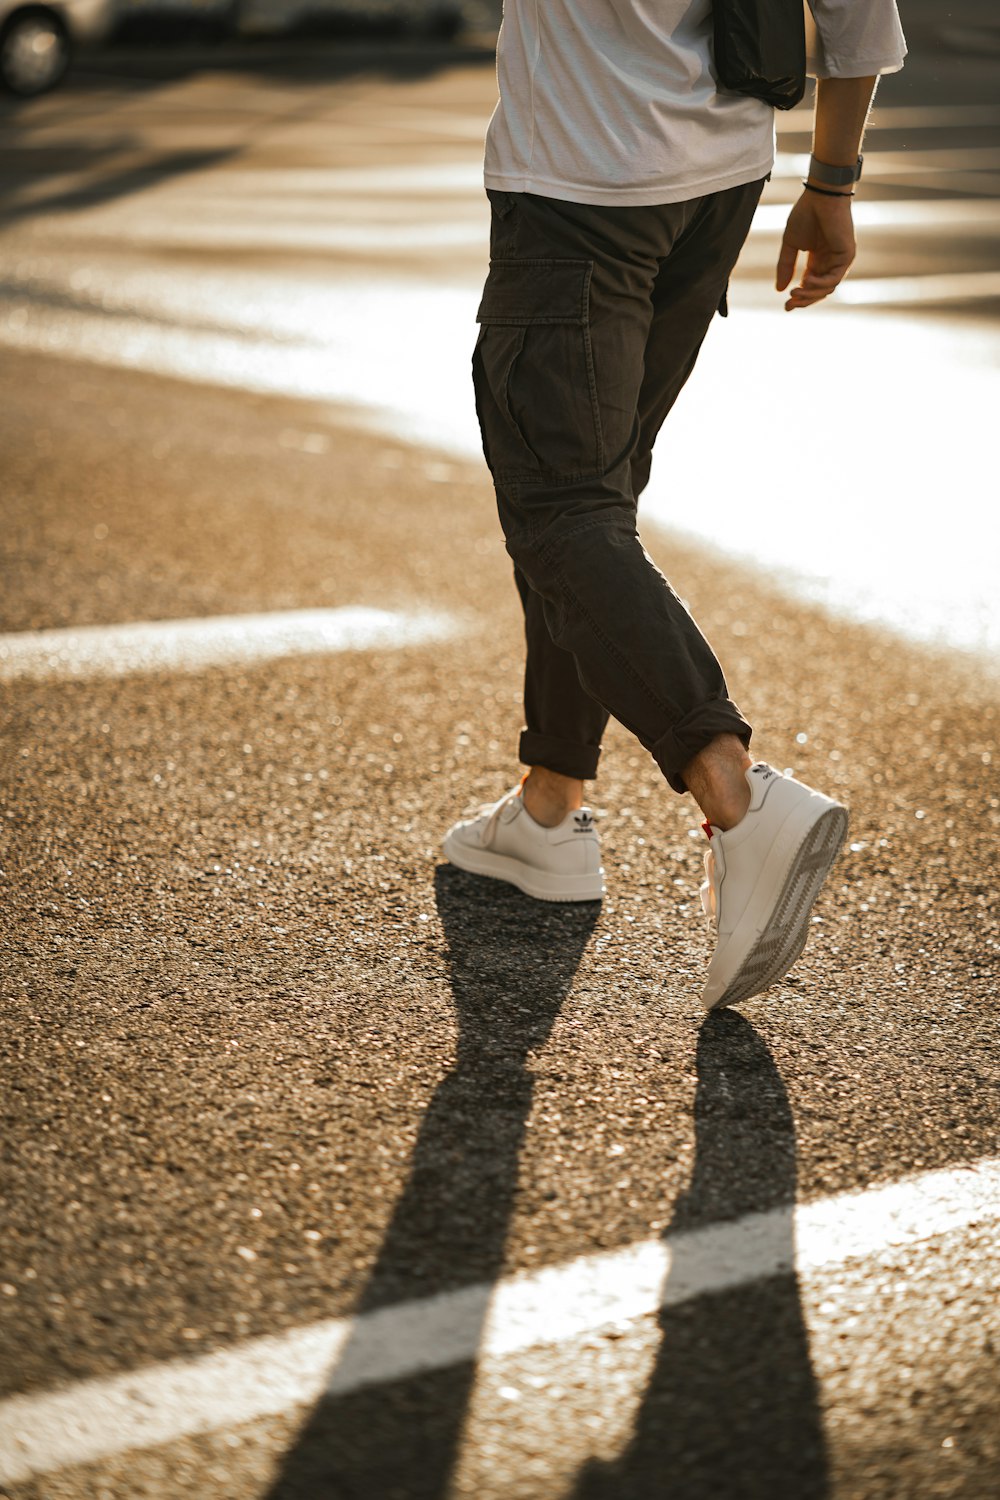 pessoa de calça preta e tênis branco andando na estrada de asfalto marrom durante o dia